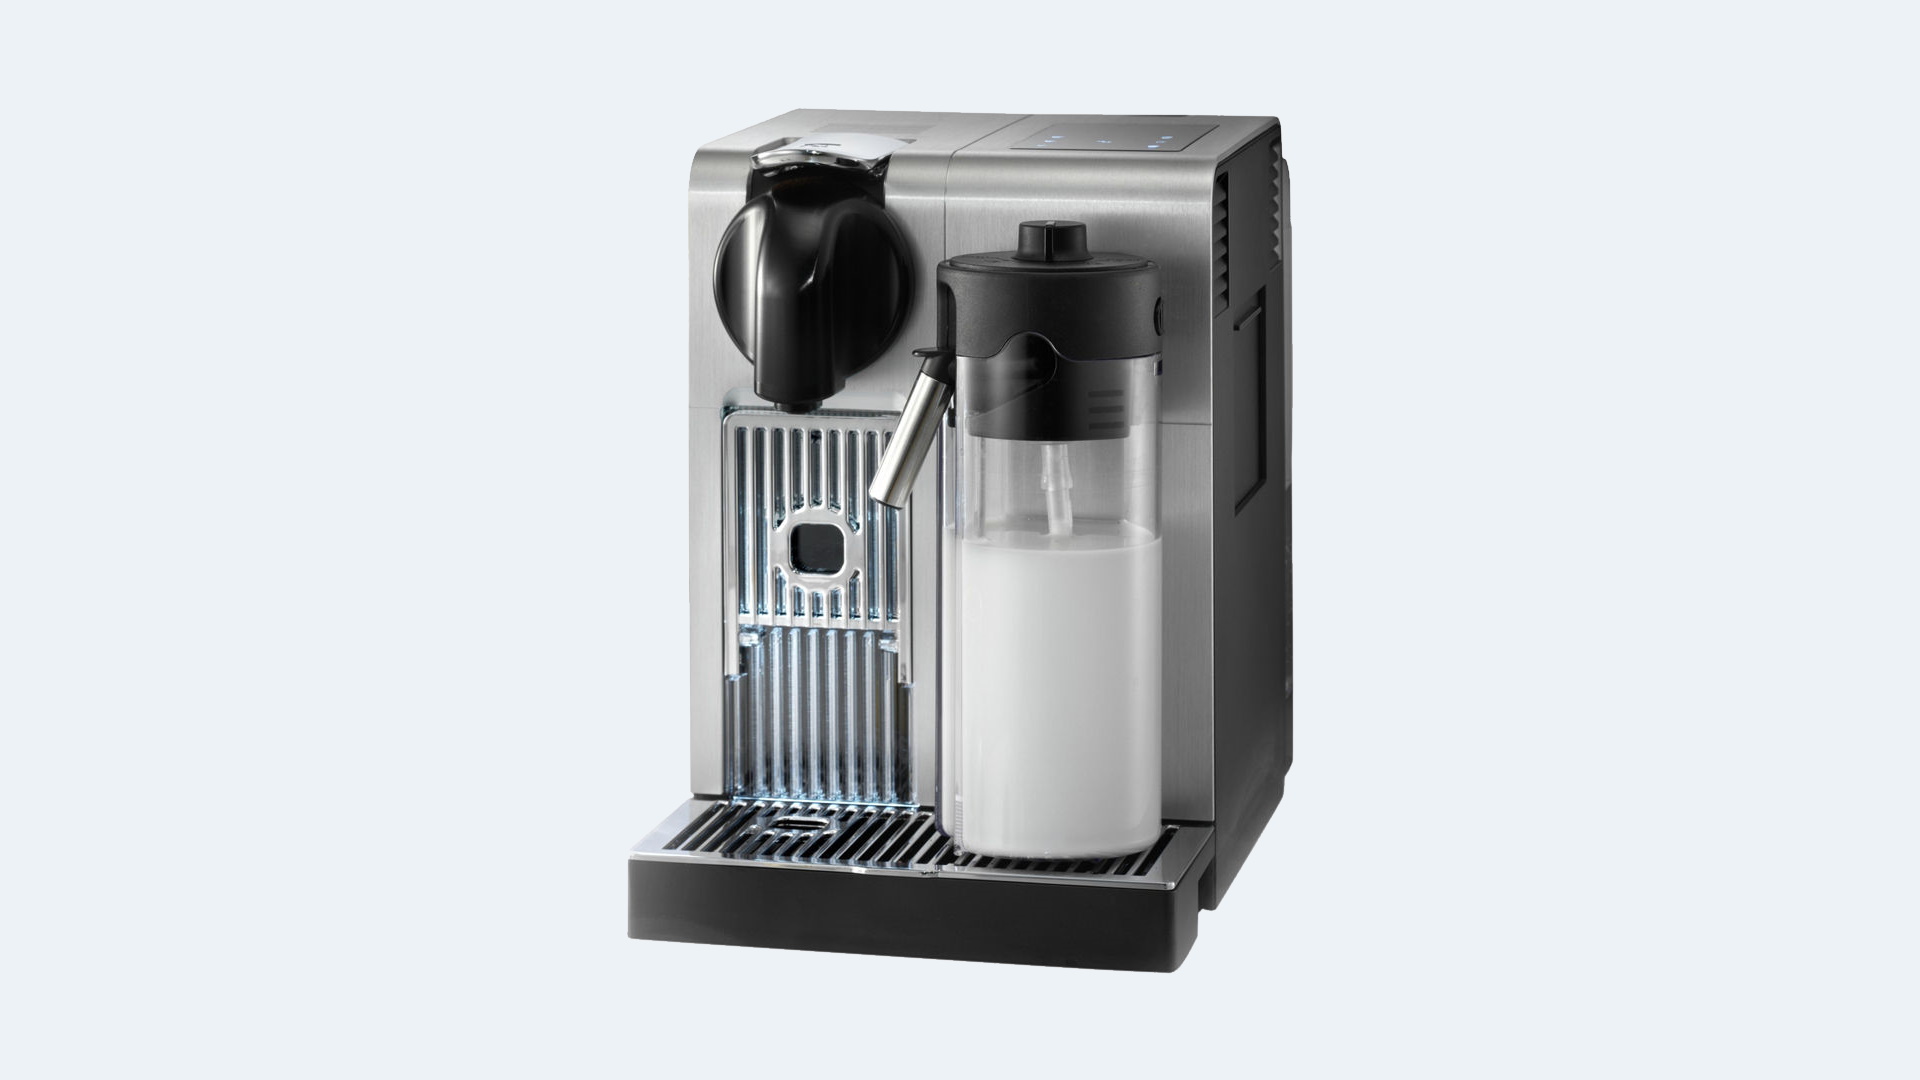 melhor máquina de café Nespresso